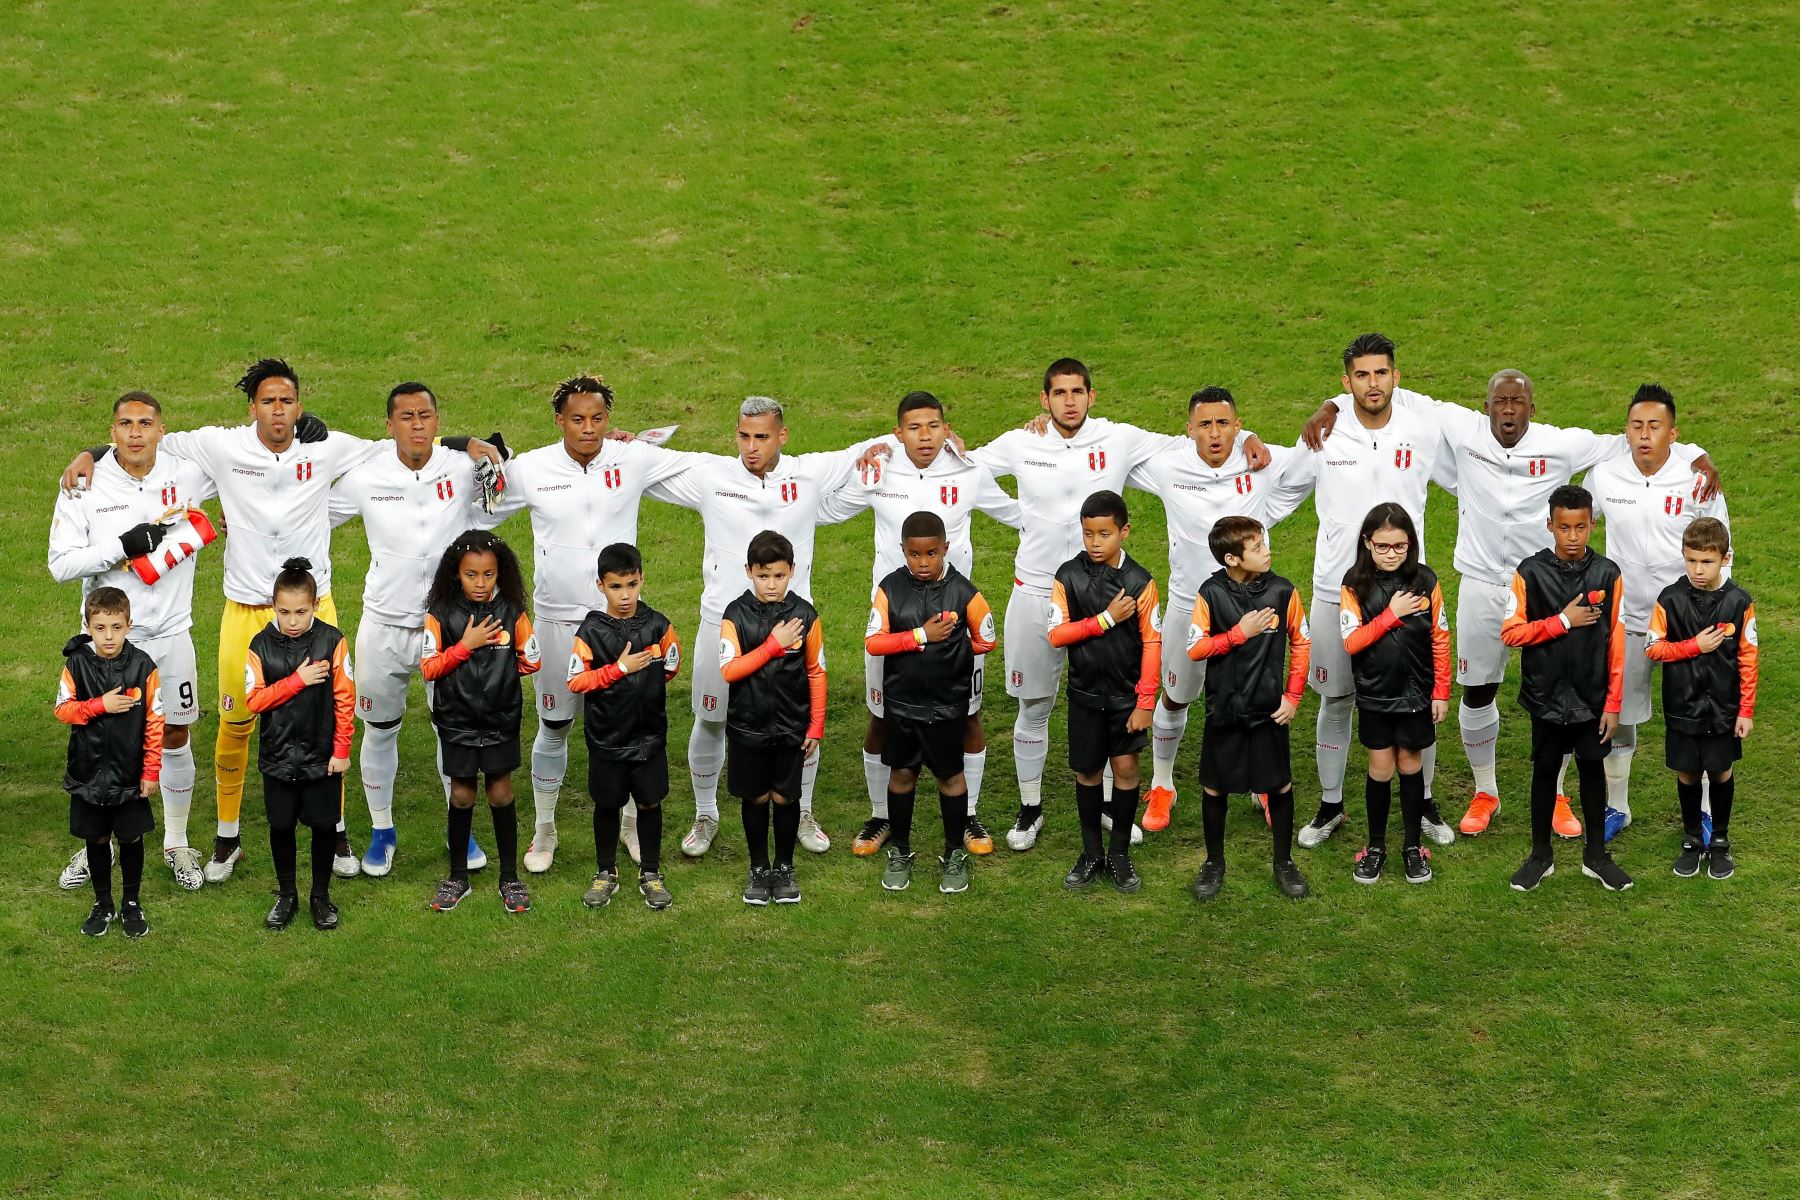 Jugadores de Perú durante el partido Chile-Perú de semifinales de la Copa América de Fútbol 2019, en el Estadio Arena do Grêmio de Porto Alegre, Brasil.
Foto: EFE